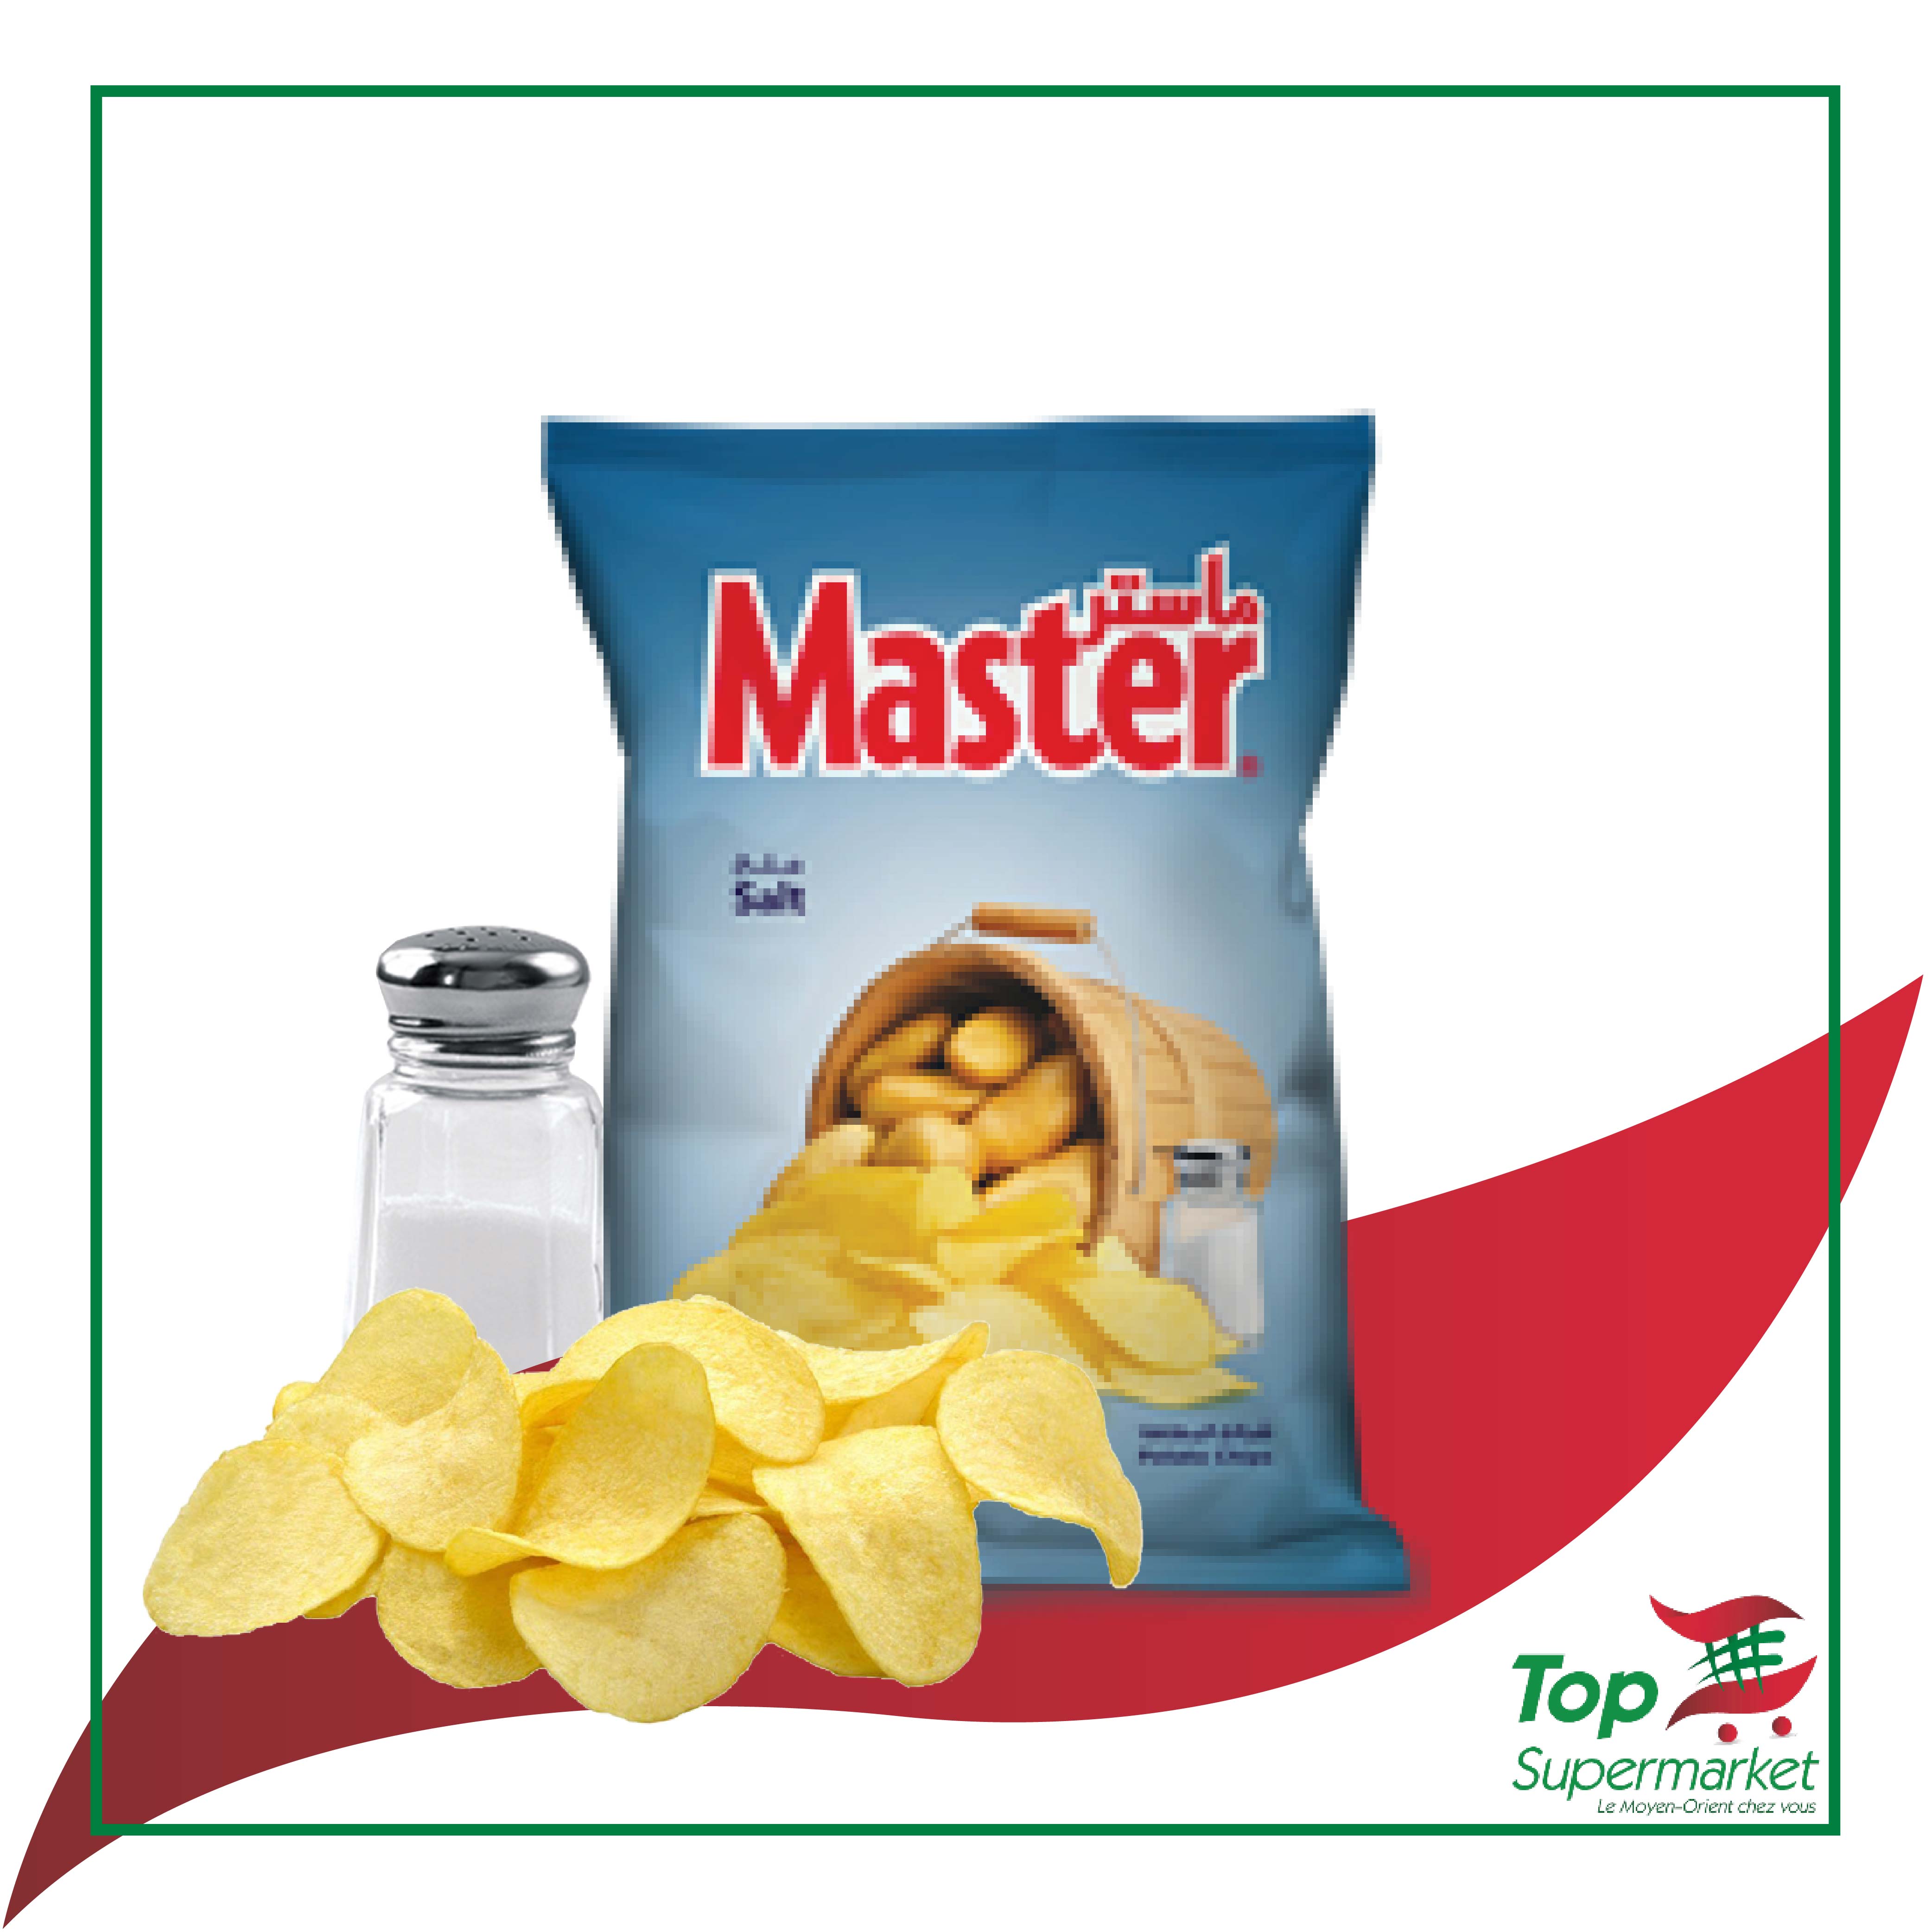 Master Chips Salt 37gr